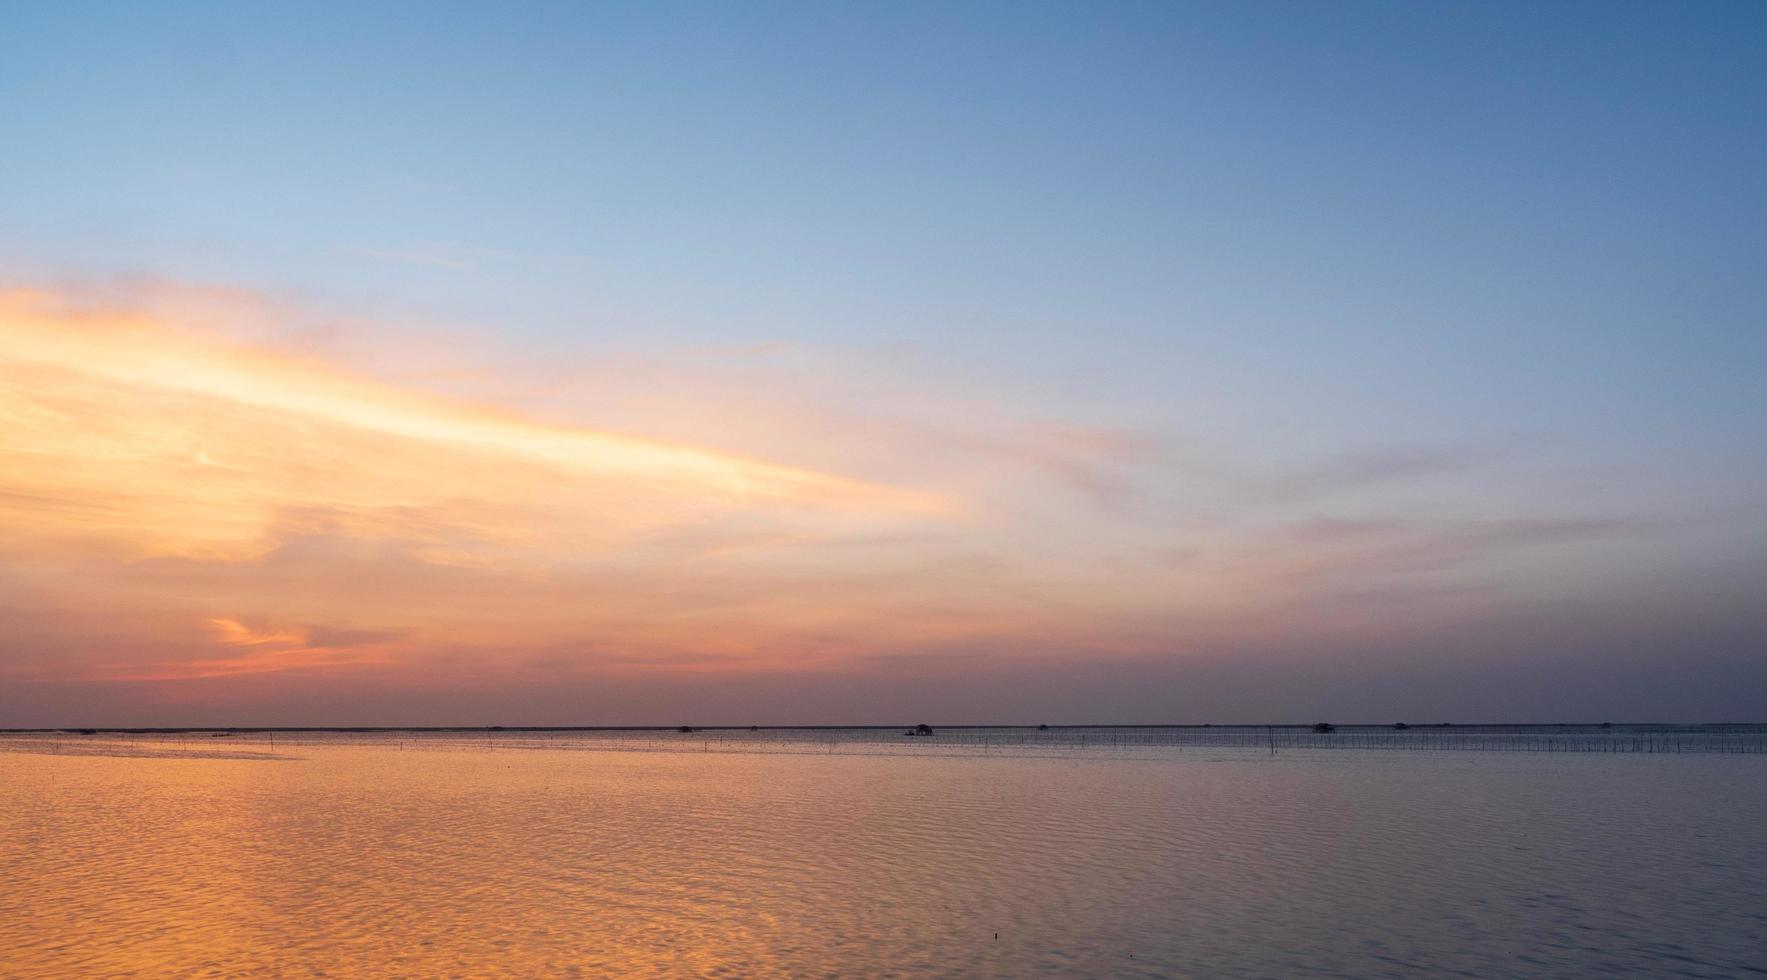 landschap gezichtspunt voor ontwerp ansichtkaart en kalender zomer zee wind golf koel op vakantie kalme zee kustgebied grote zonsondergang hemel licht oranje gouden avonduren dag in chonburi thailand foto